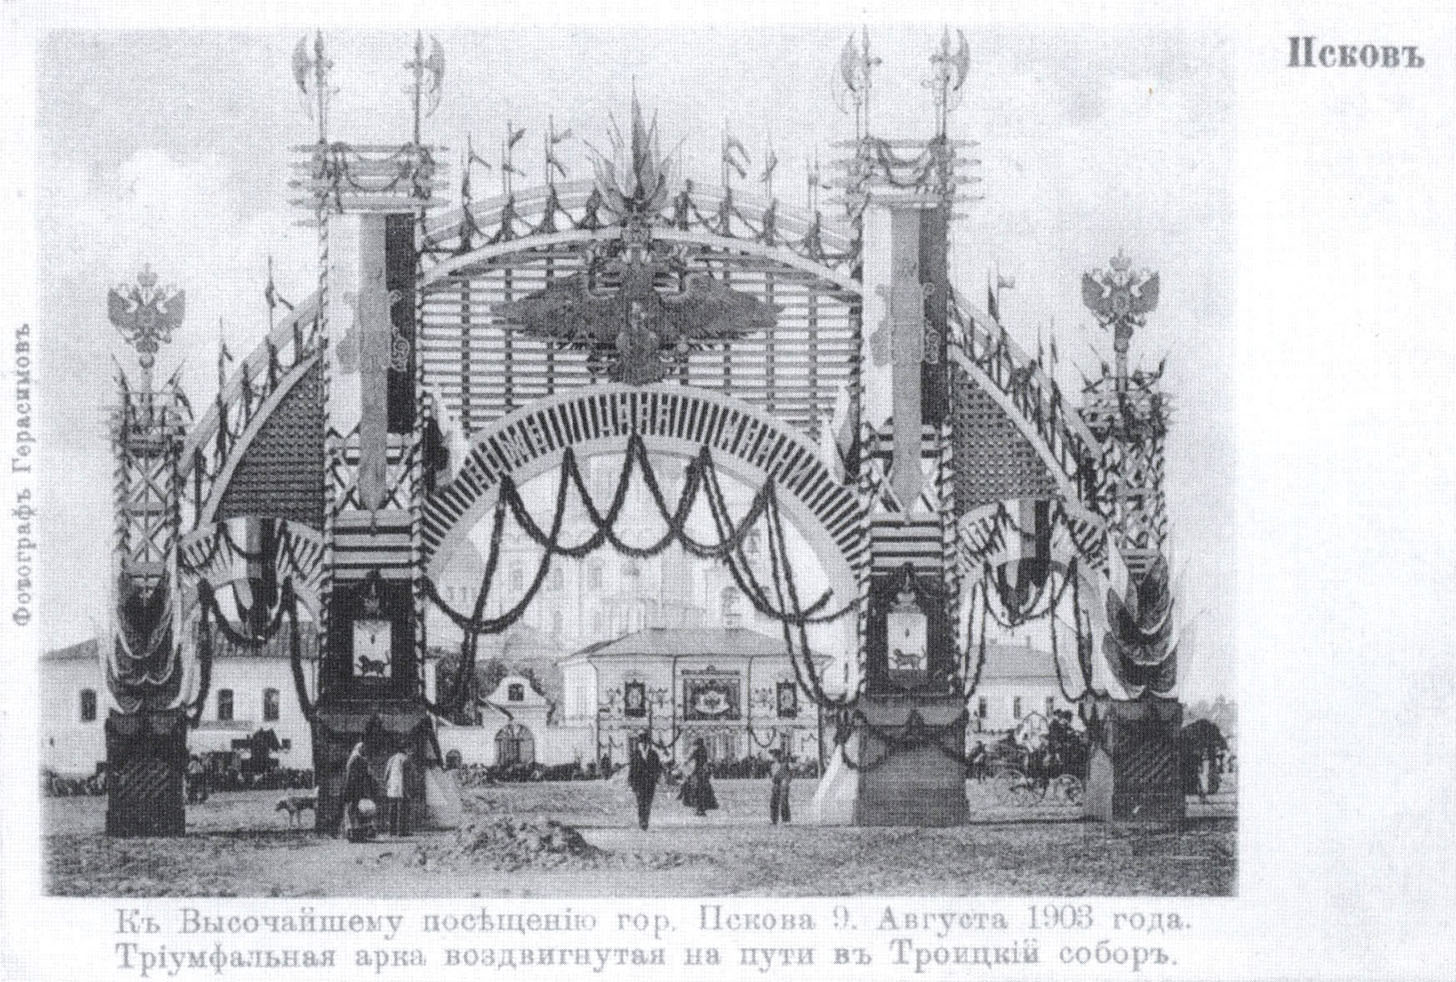 К высочайшему посещению гор. Пскова. 9 августа 1903 года. Триумфальная арка, воздвигнутая на пути в Троицкий собор.